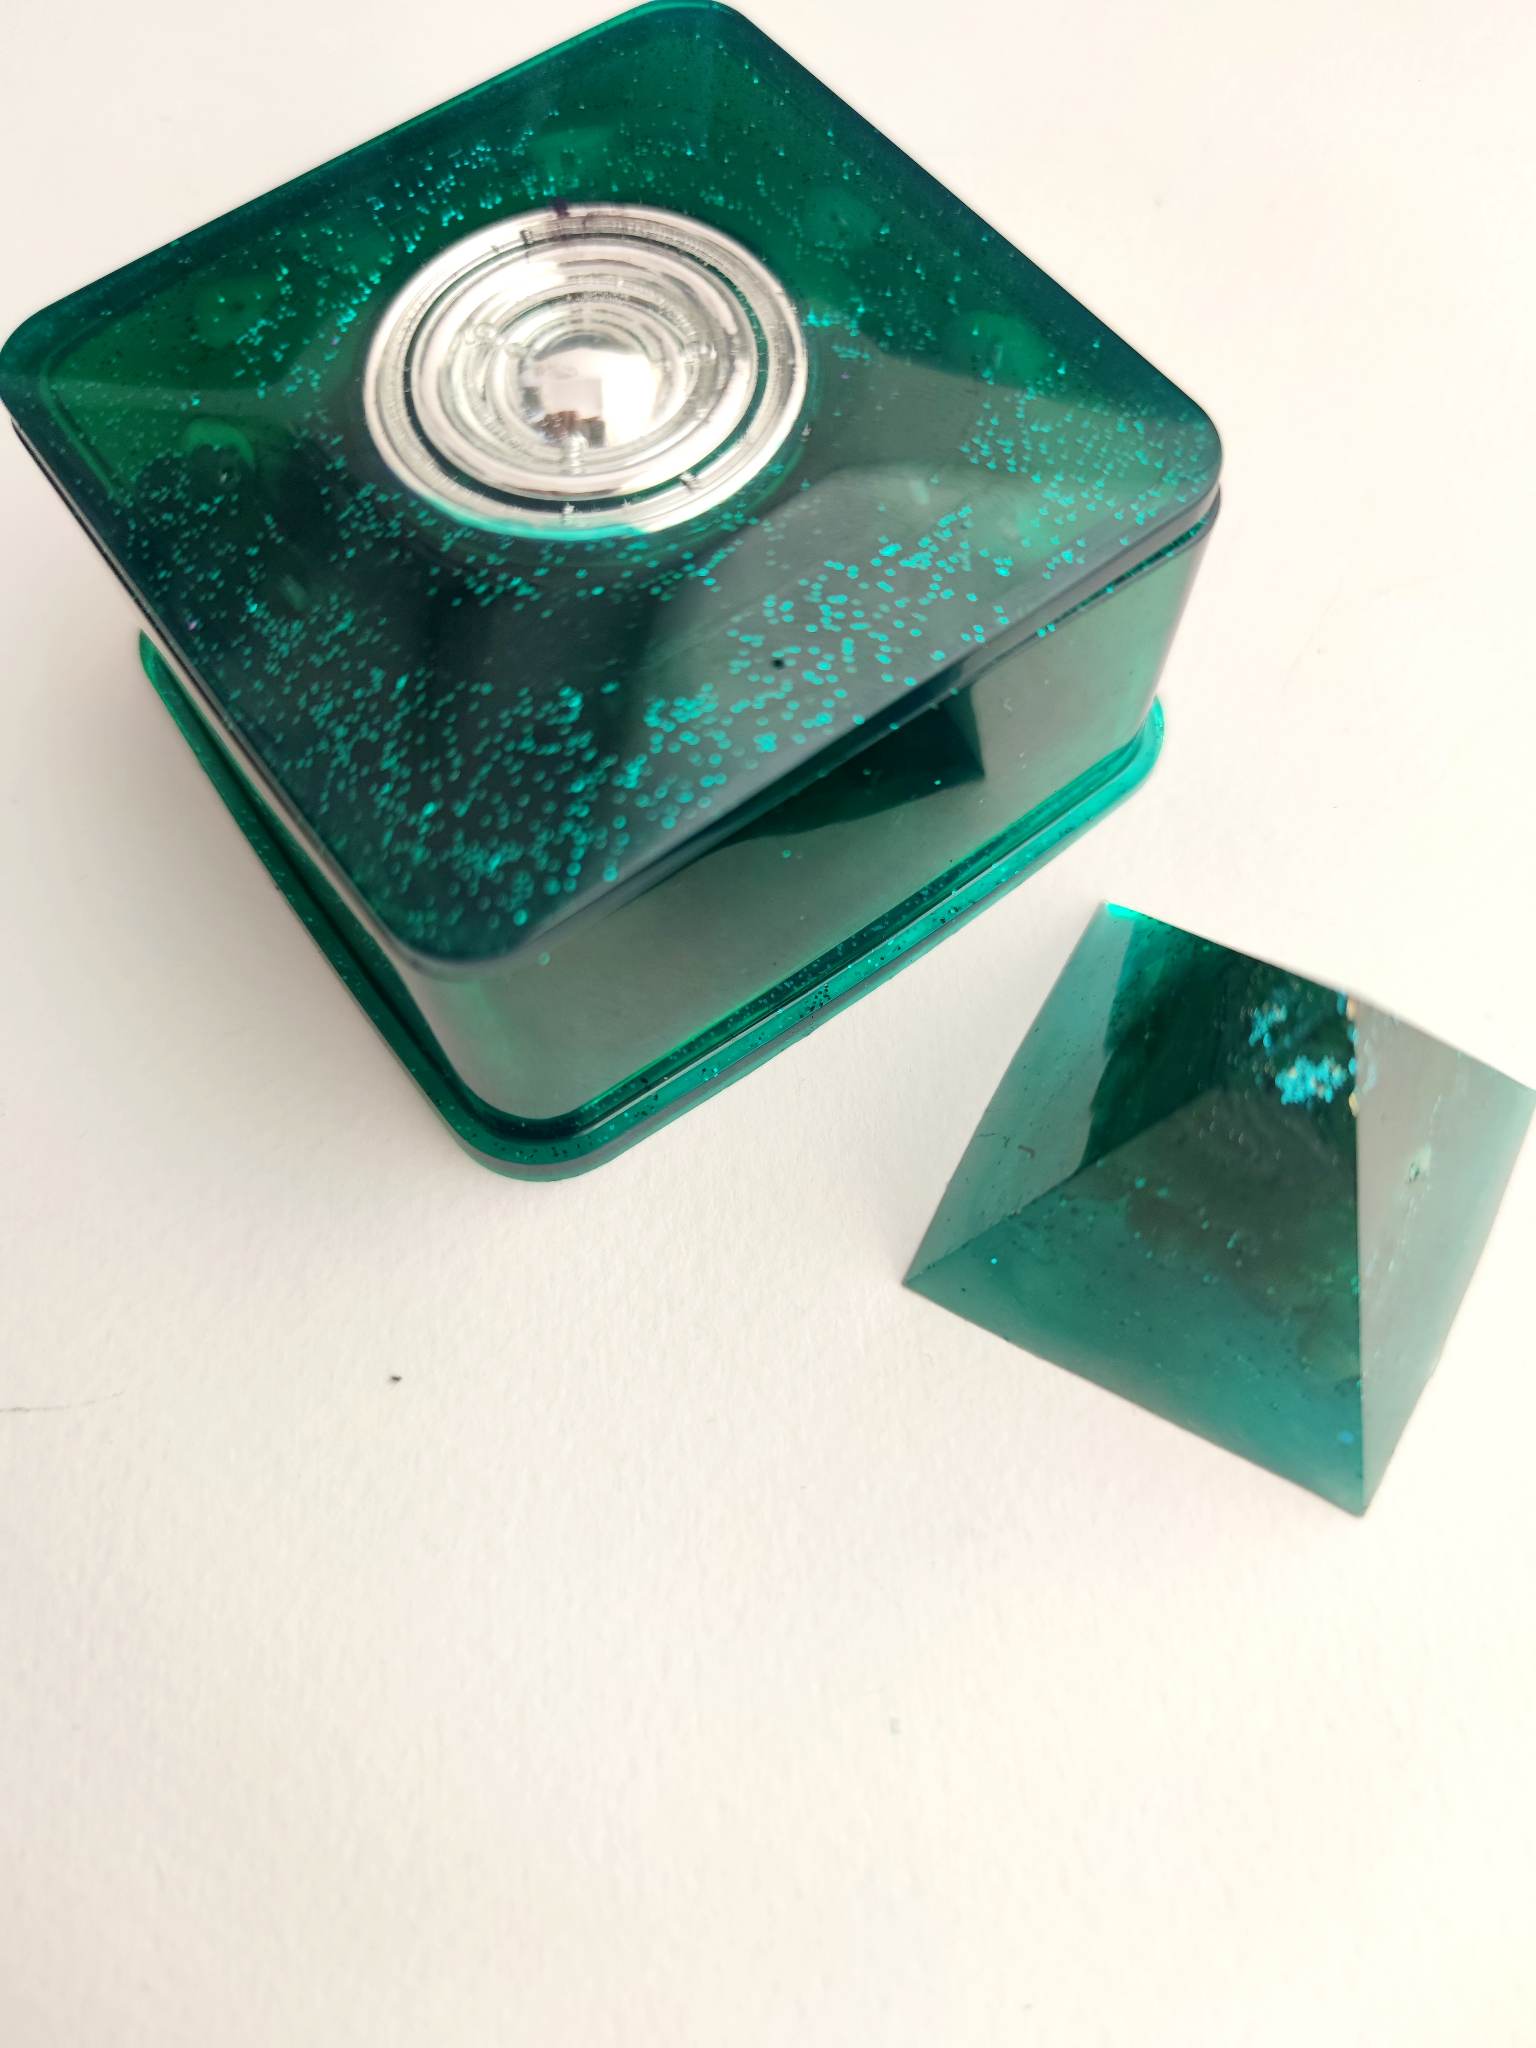 Κουτί οργονίτη για την αποθήκευση ημιπολύτιμων λίθων, ρούνων και μαγικών κοσμημάτων - Green magic